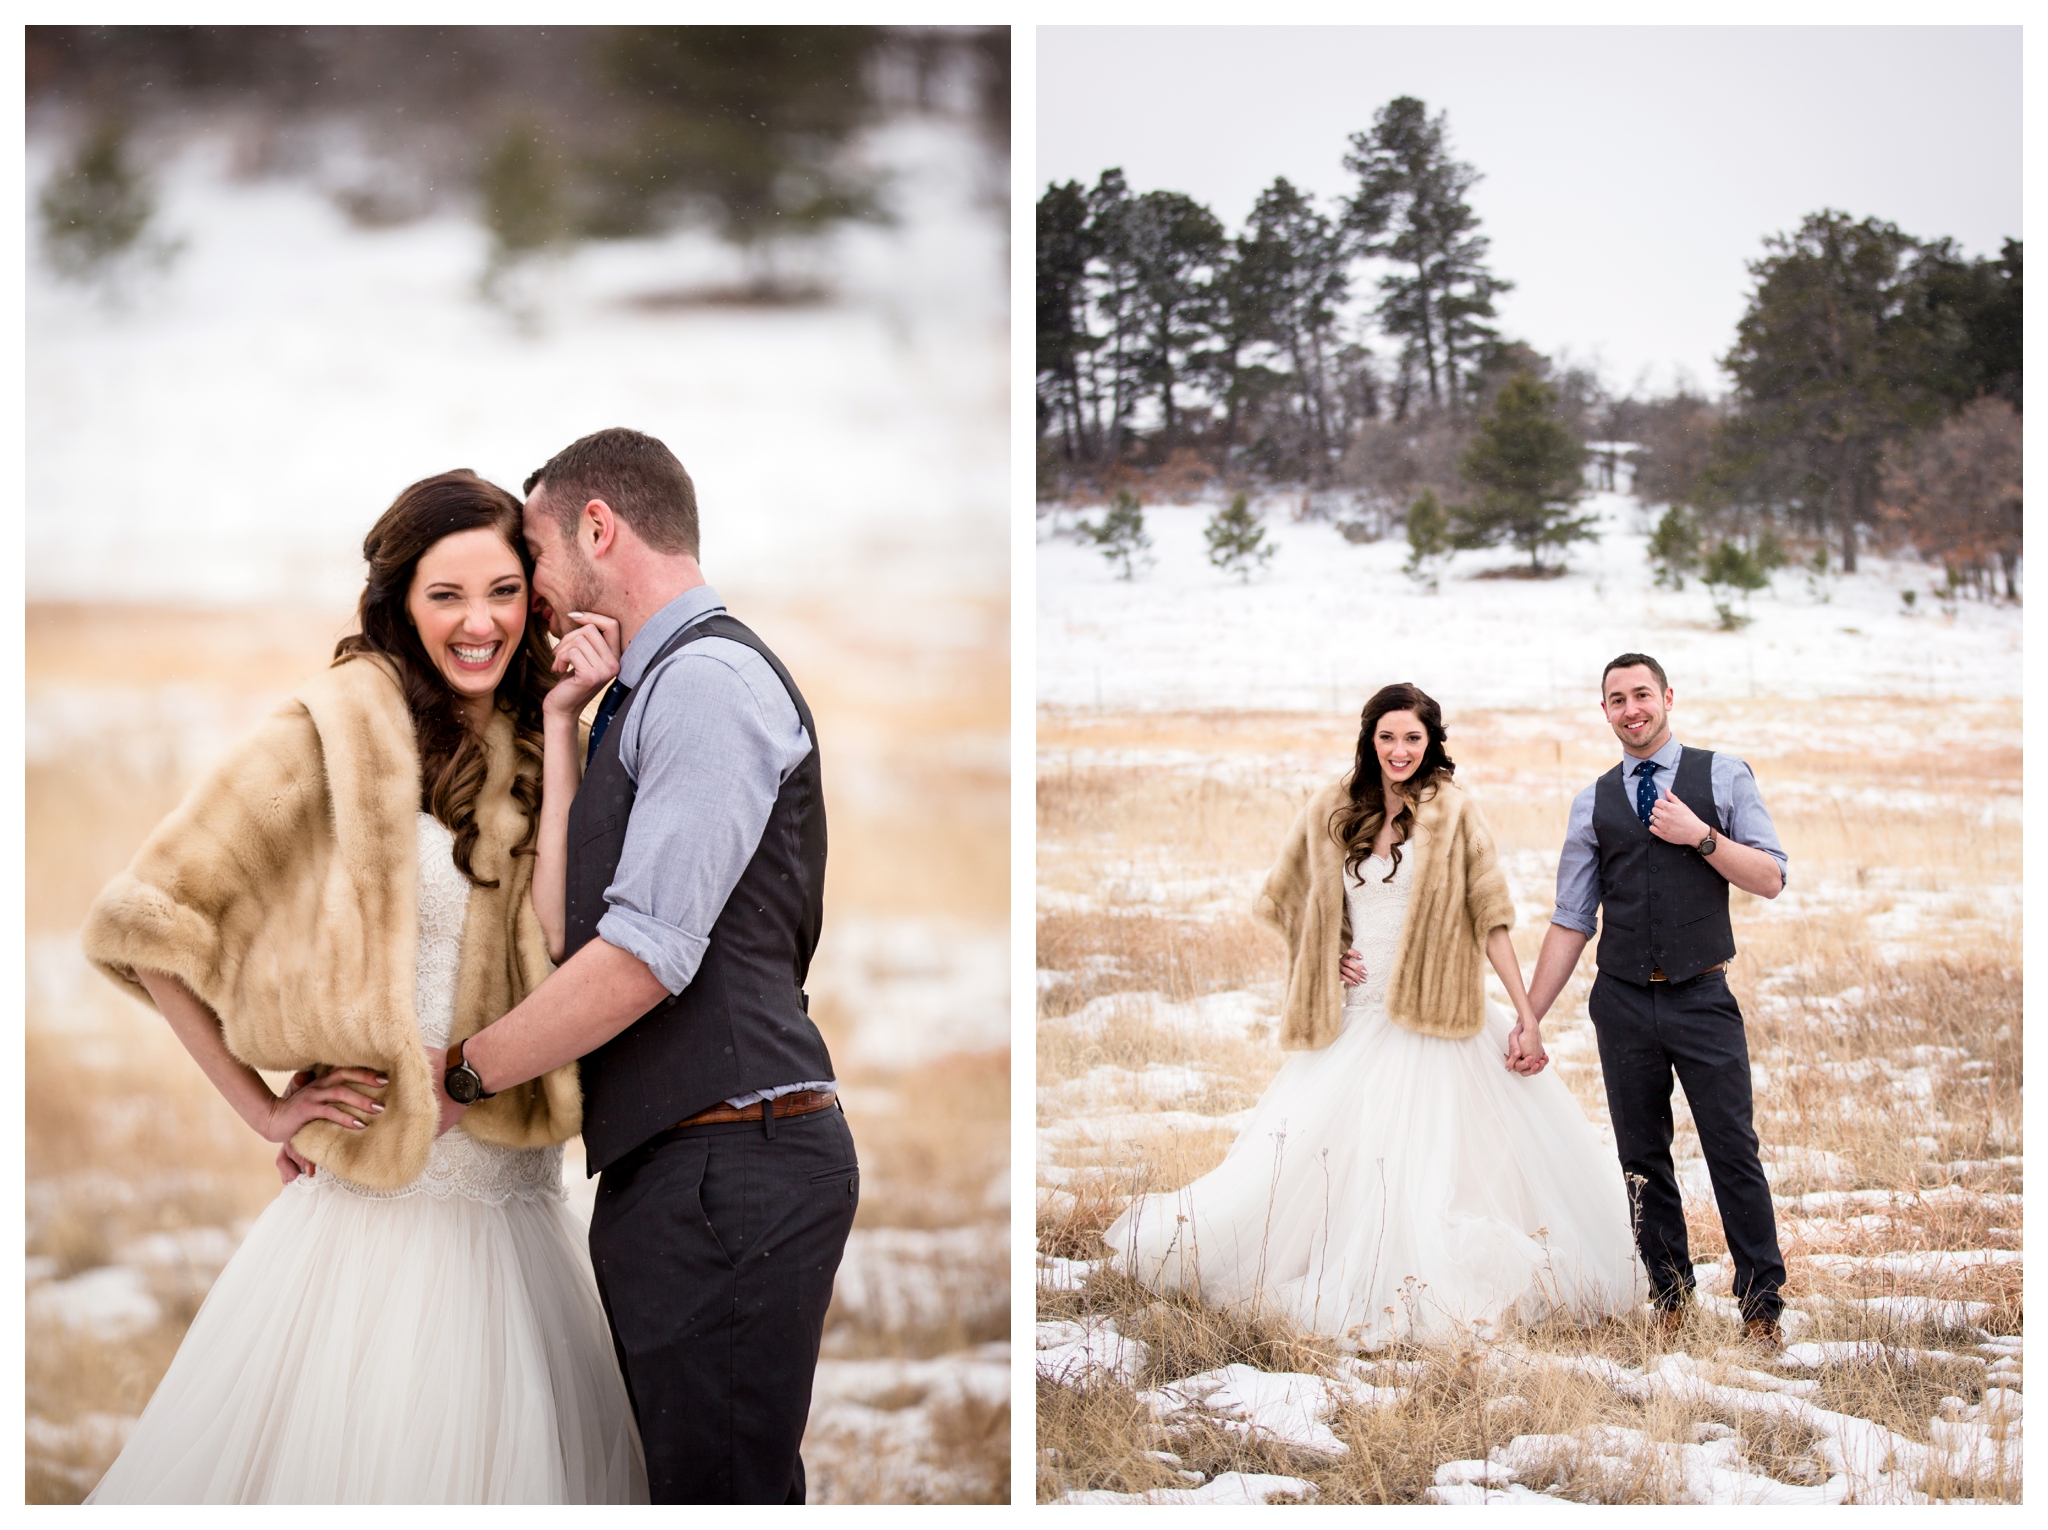 snowy Colorado winter wedding inspiration 